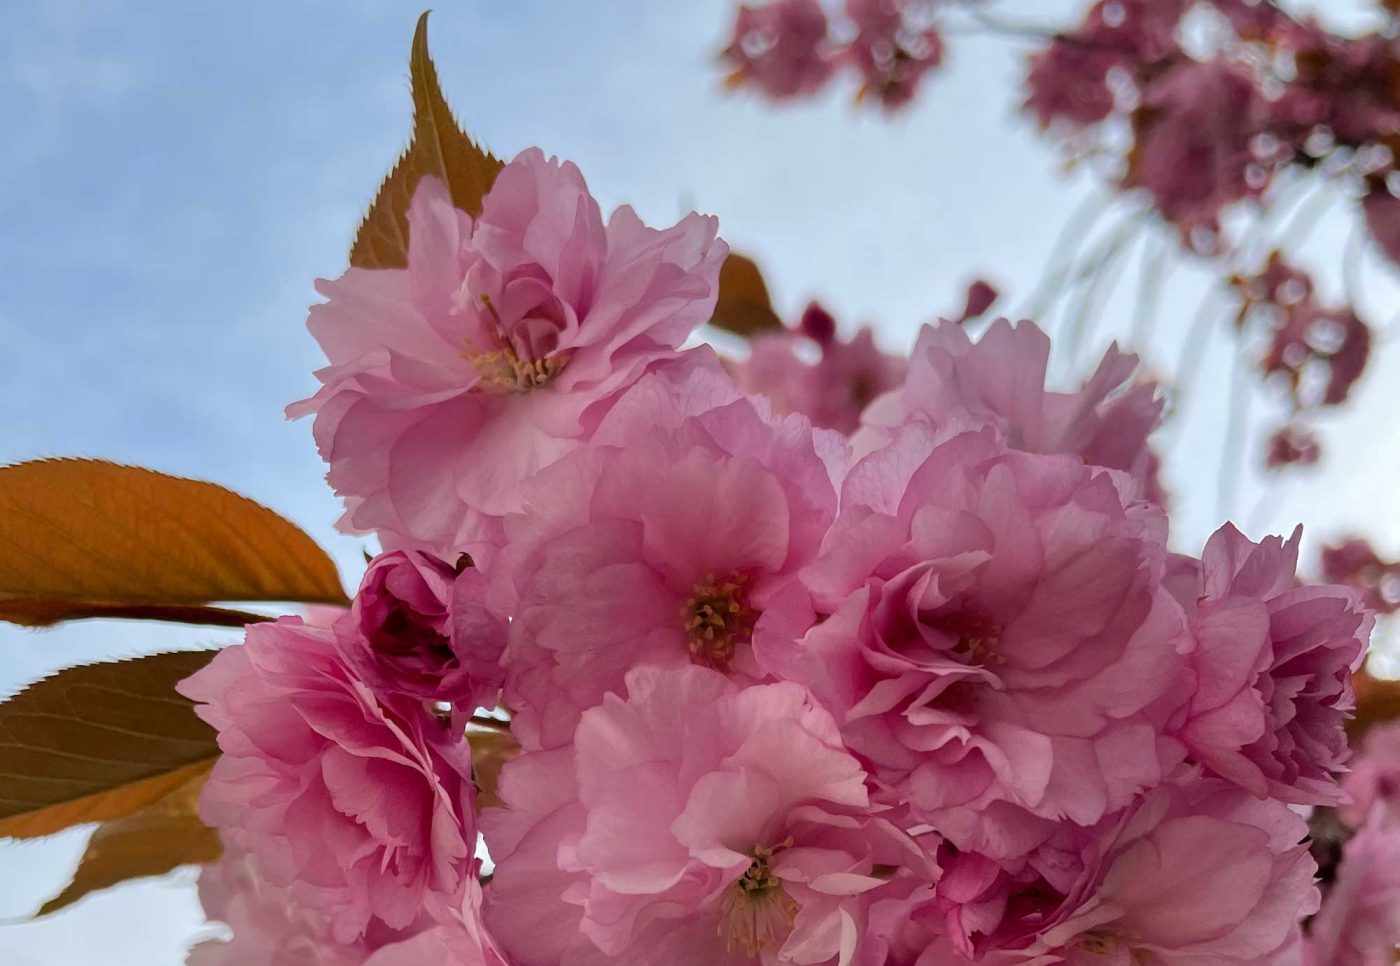 "Immer wenn die Kirschen blühen, erinnere ich mich an eine Japanreise im Jahr des Tsunamis vor 10 Jahren." Foto: Michael Chalupka